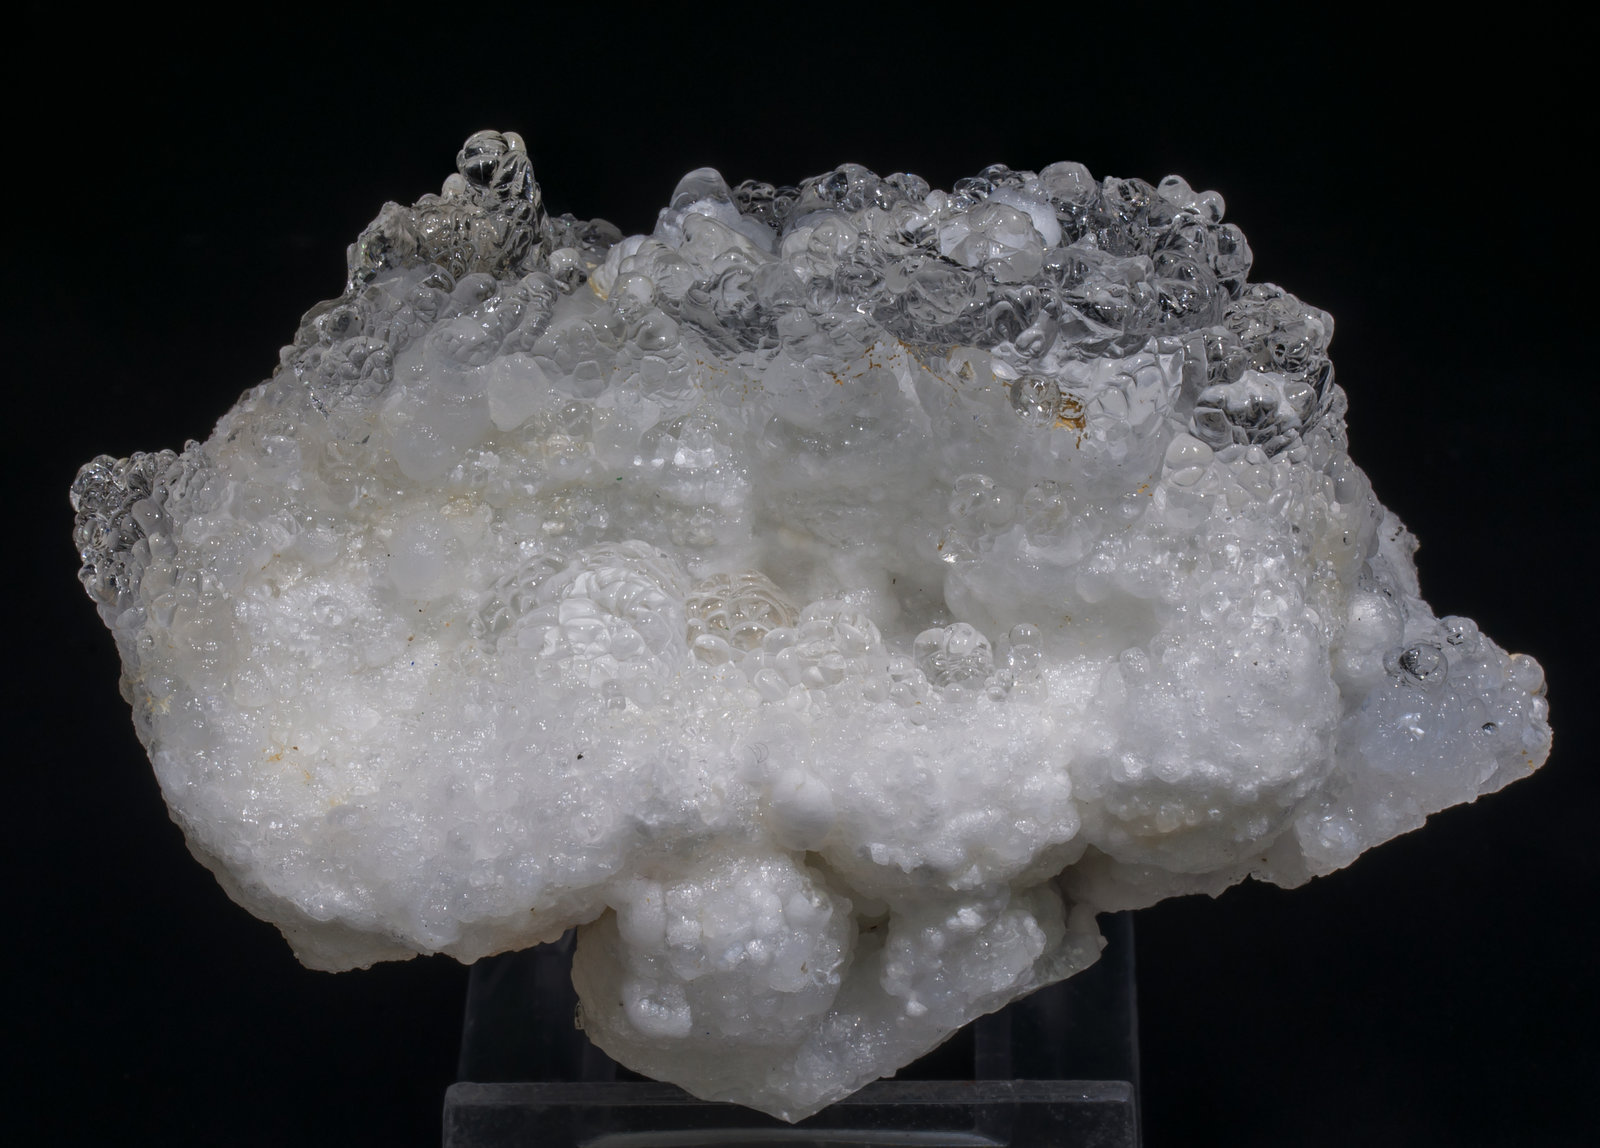 specimens/s_imagesAC1/Opal_hyalite-EL47AC1f.jpg